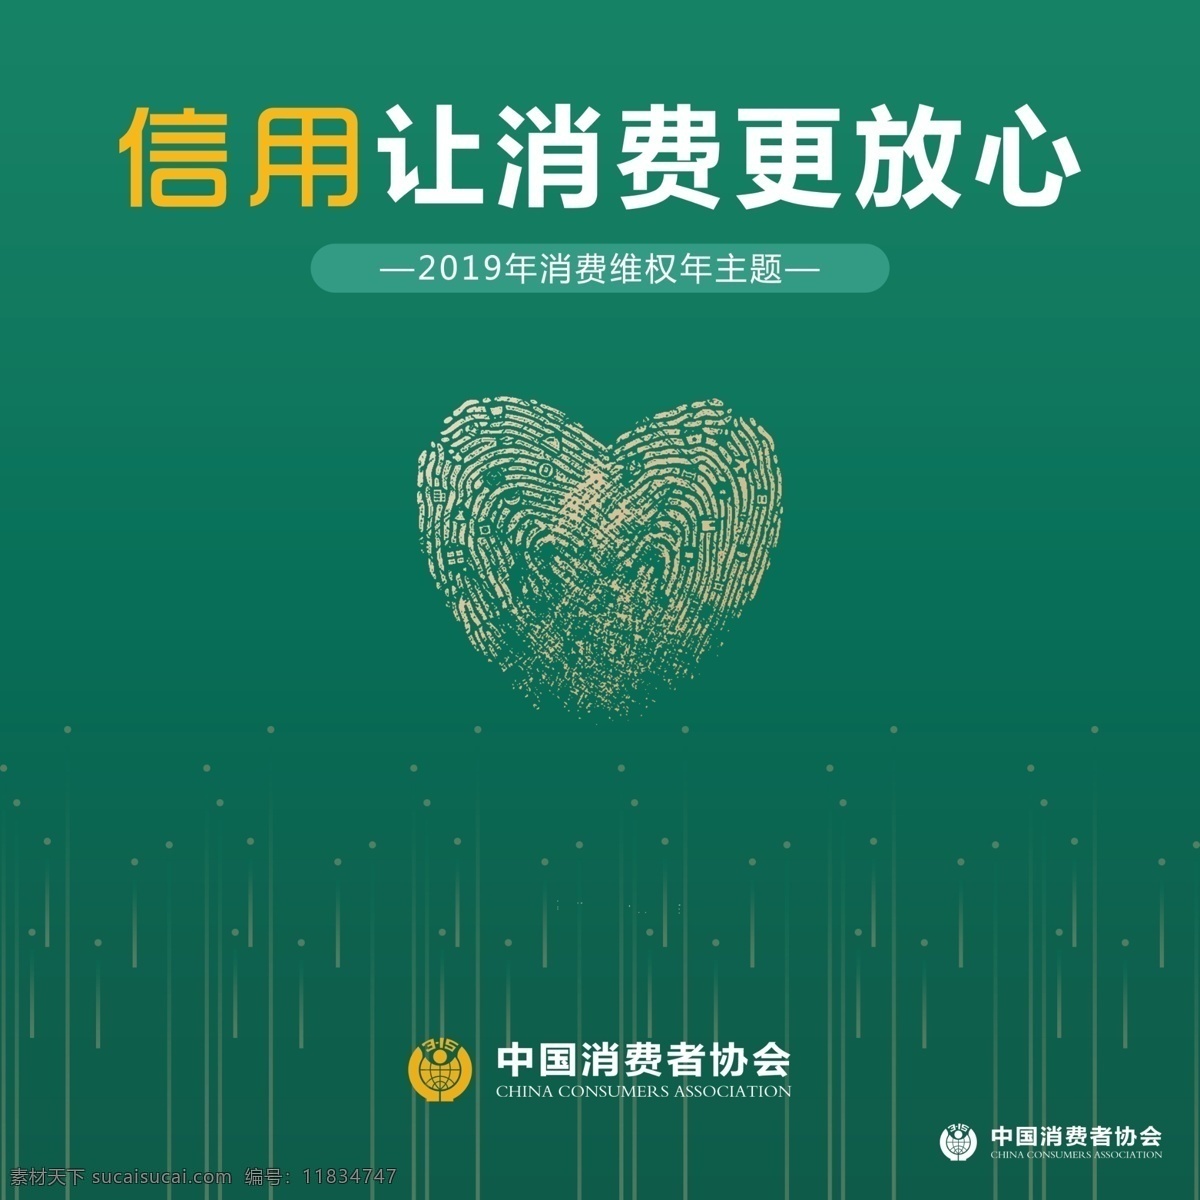 信用 消费 更 放心 让消费更放心 中国消费者 协会 爱心 手印 消费维权 背景 绿色 分层